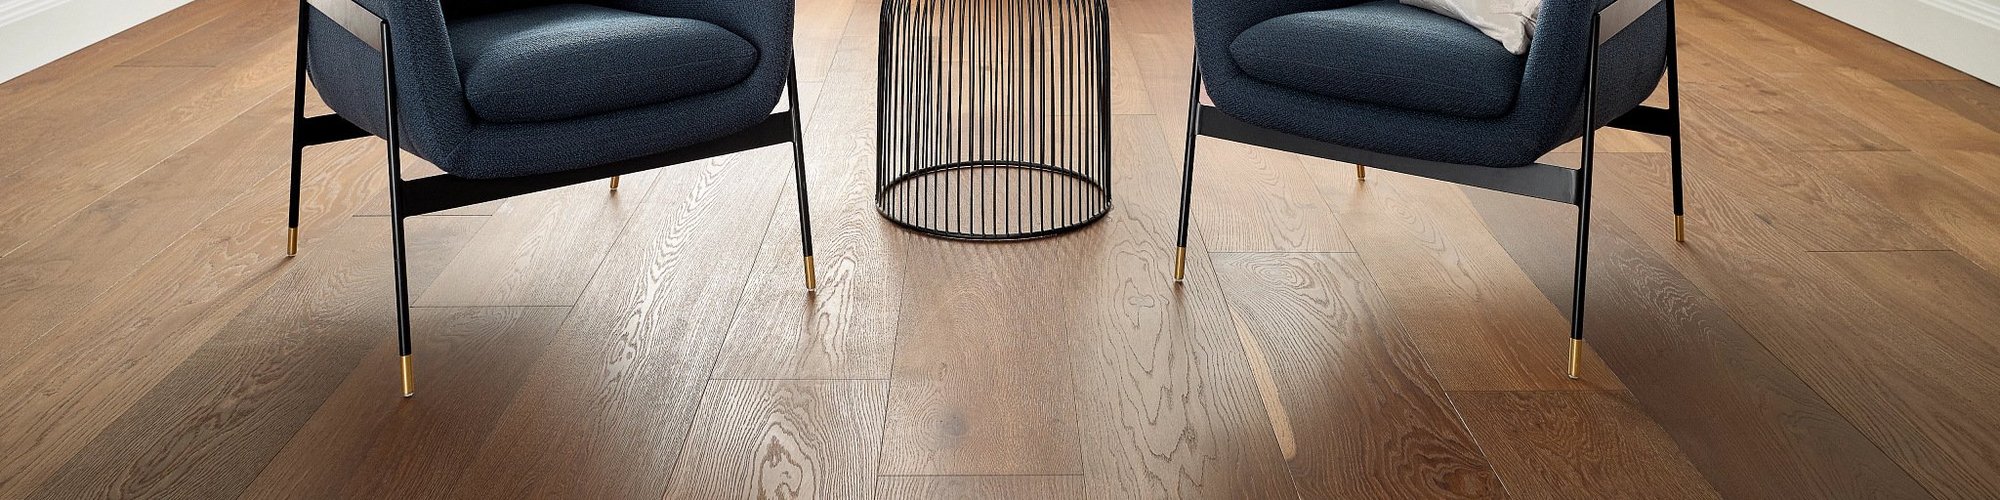 two arm chairs on wood floors - AAAA Flooring